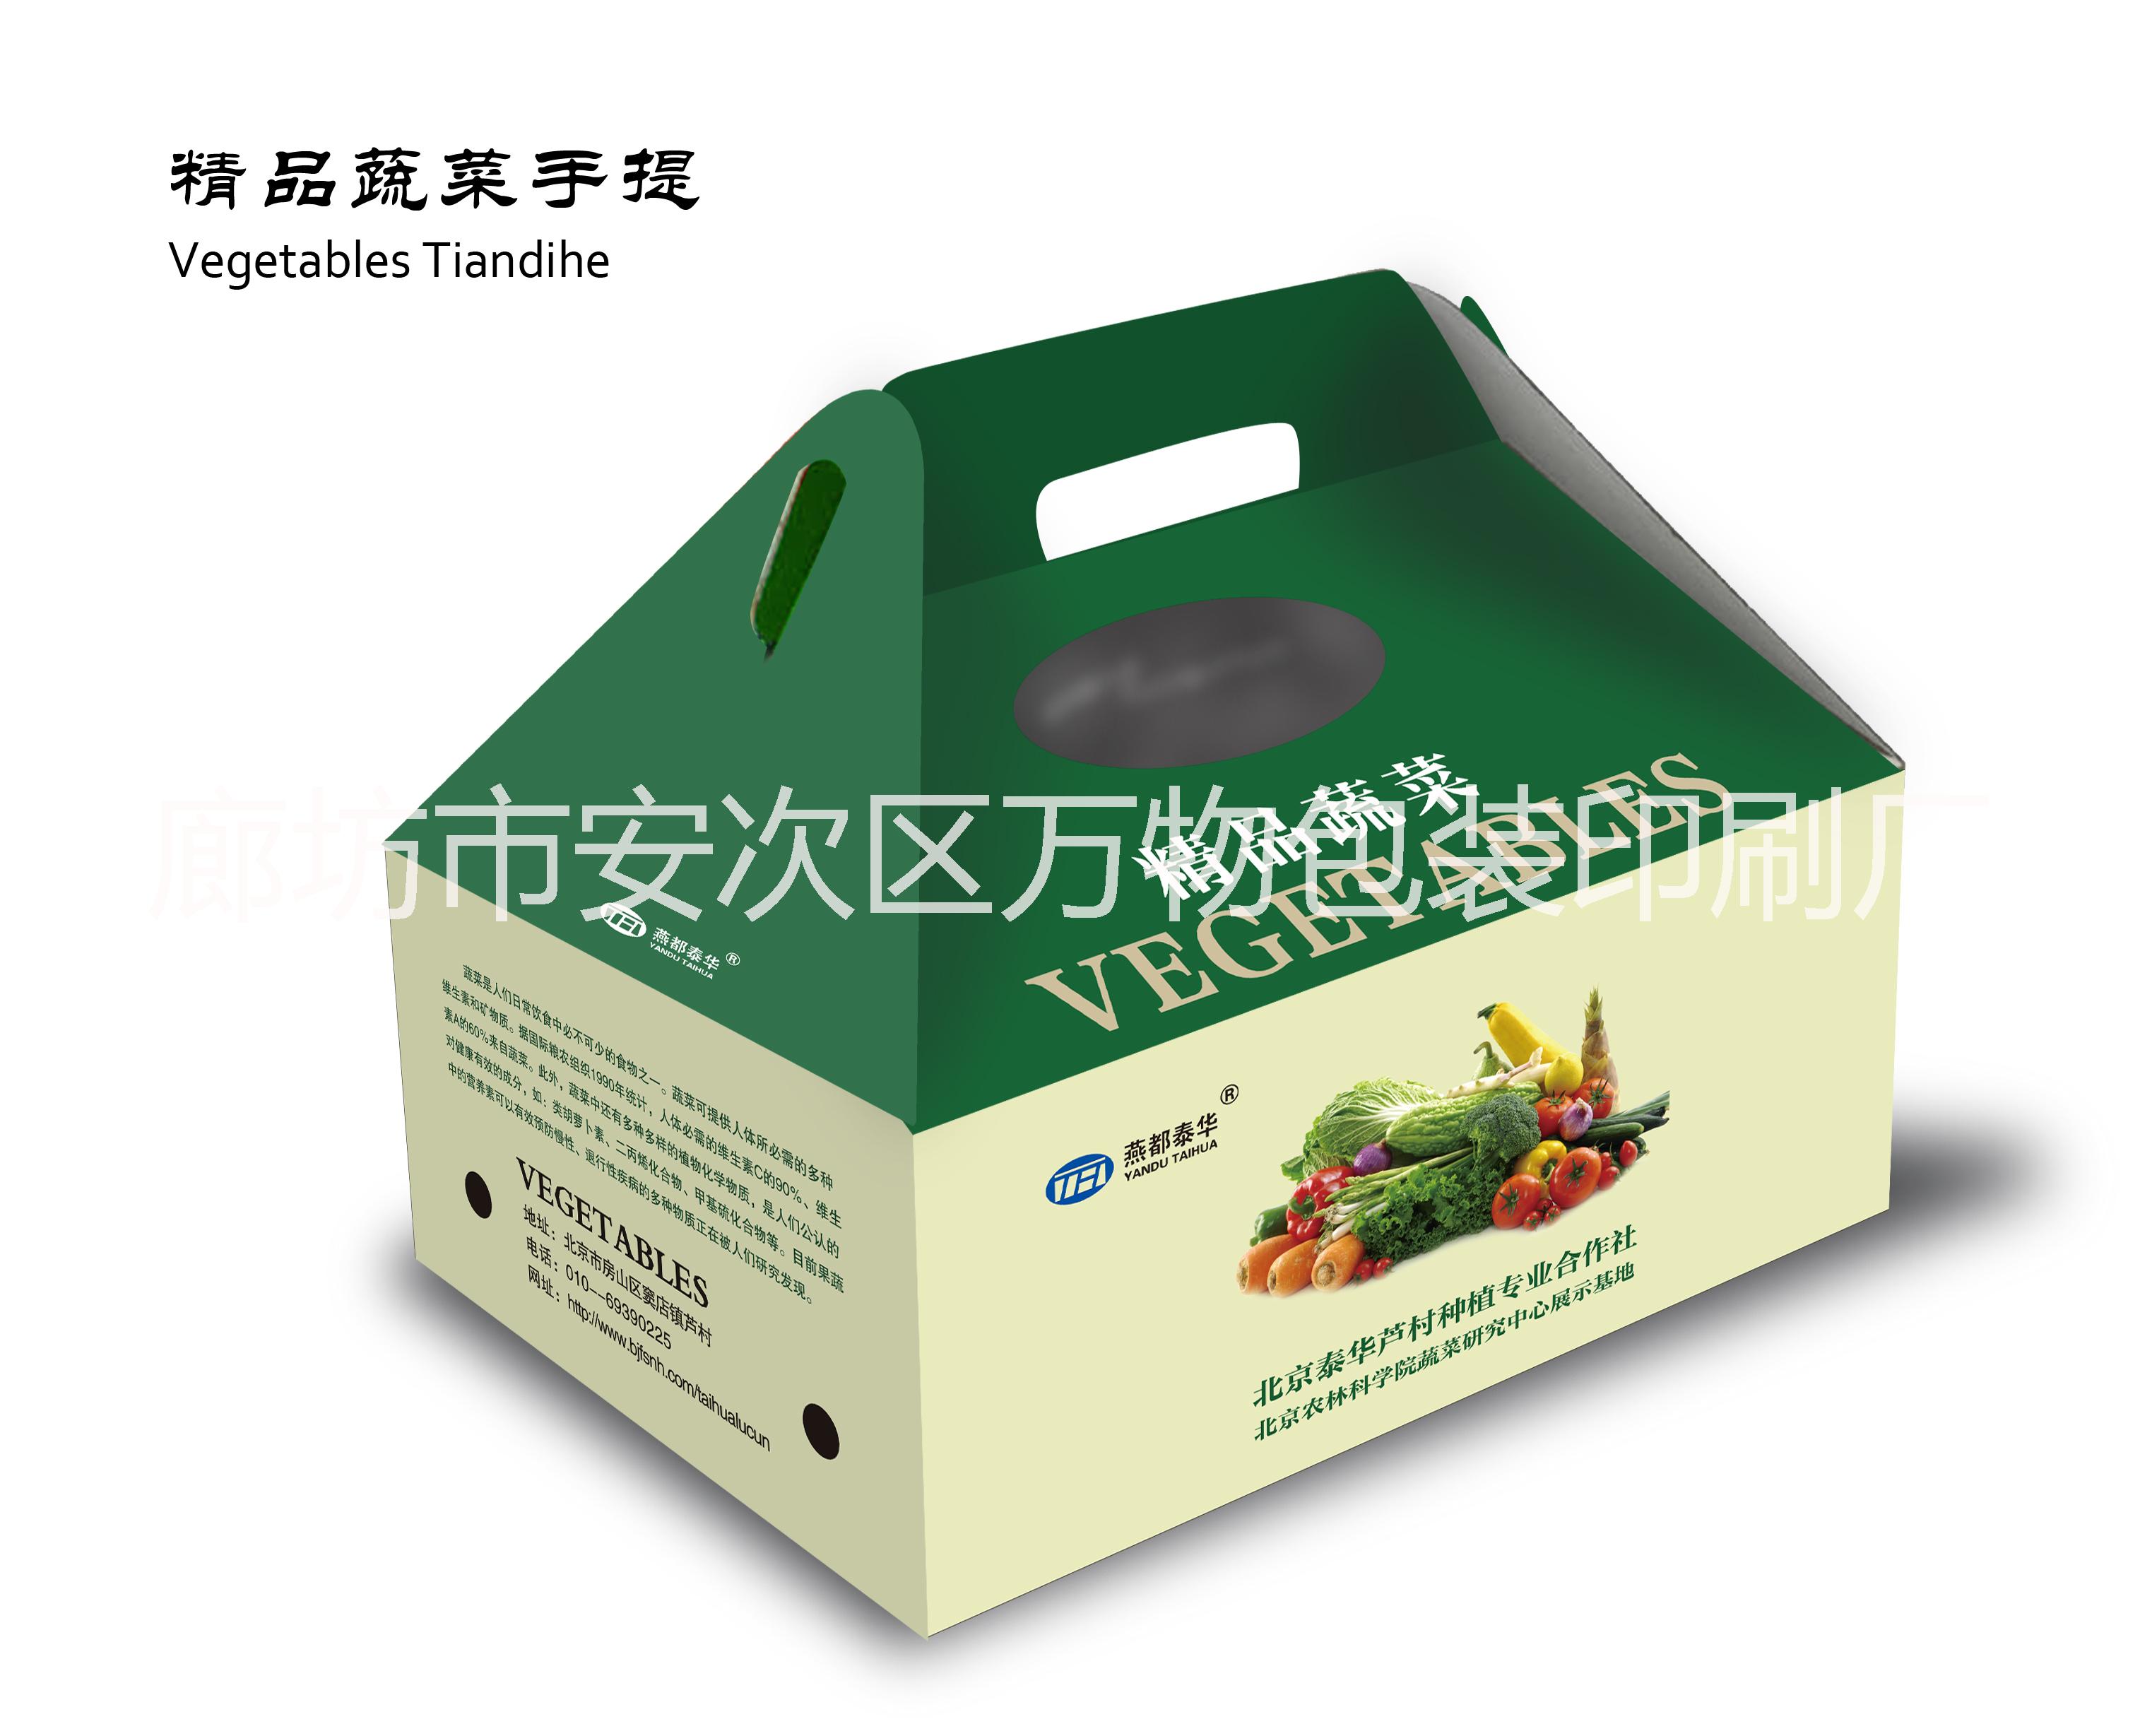 蔬菜水果礼盒蔬菜水果礼盒价格蔬菜水果礼盒供应商蔬菜水果包装盒批发图片